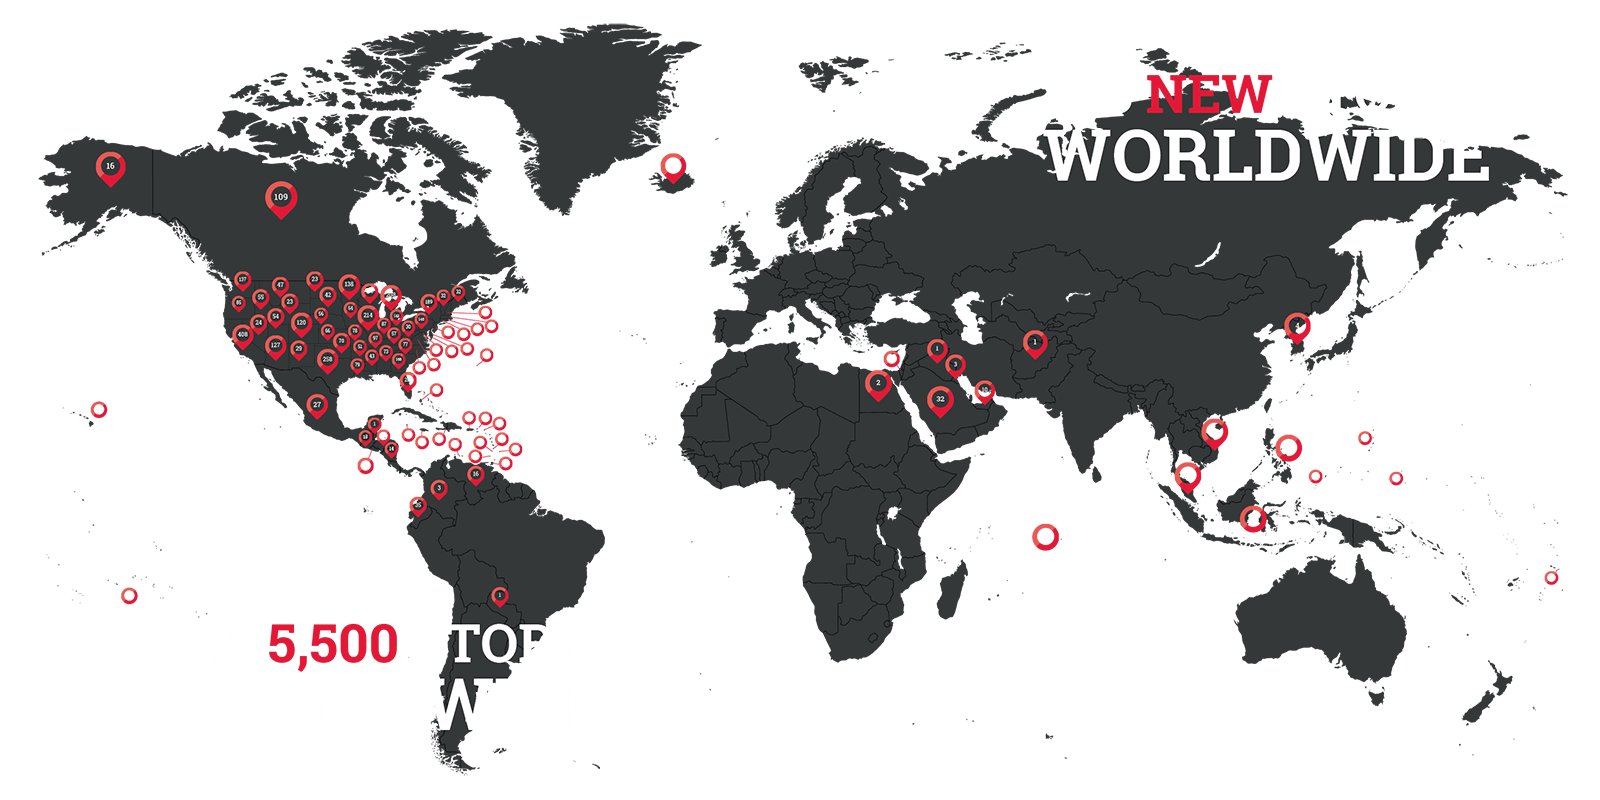 超过5400家门店，还在不断增长